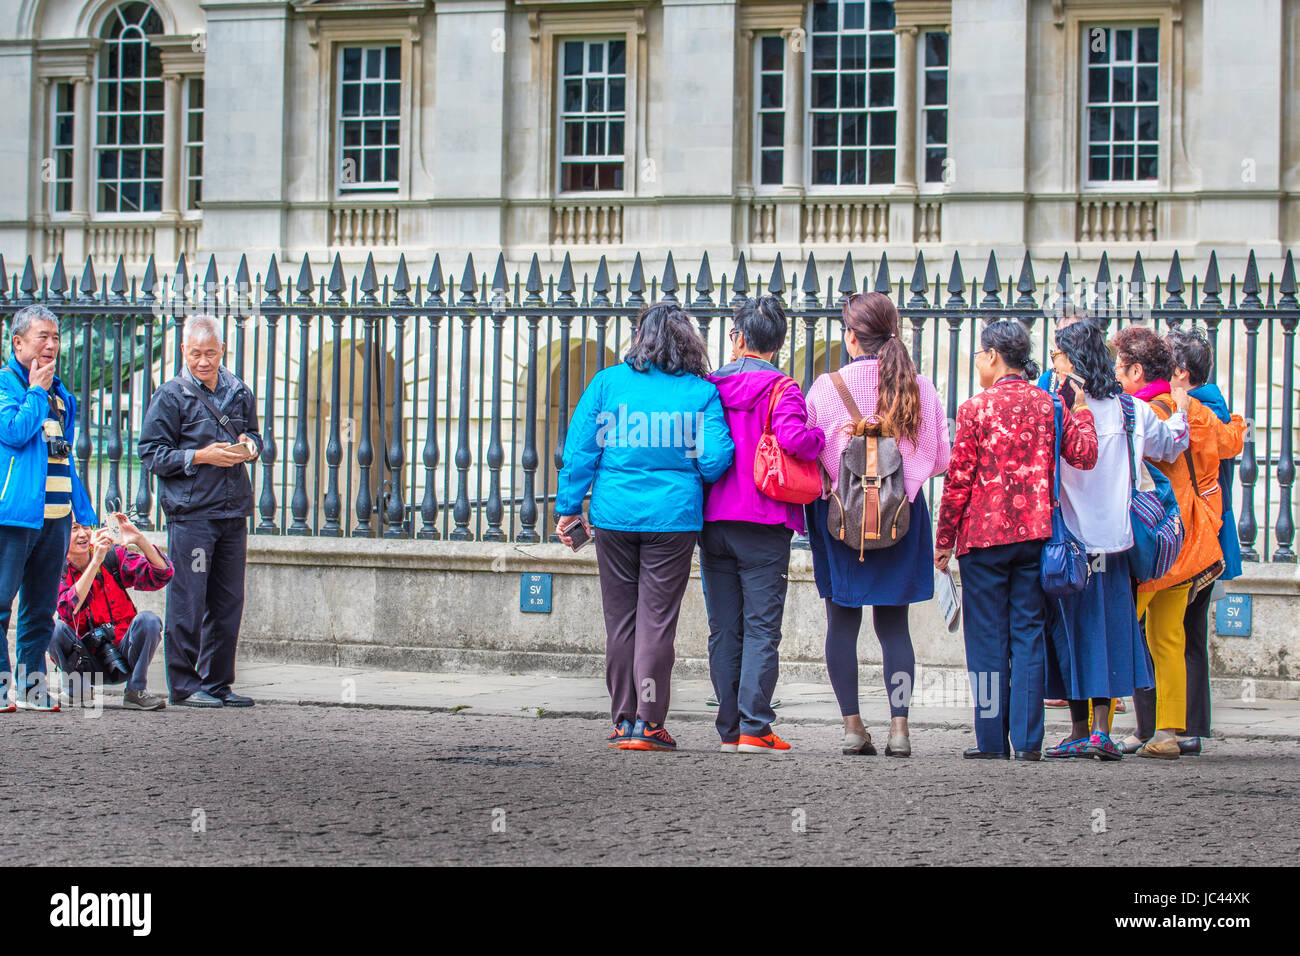 Gruppe von chinesischen TouristInnen Pose für ein Foto vor dem Geländer des Senat-Haus, Universität Cambridge, England, UK. Stockfoto